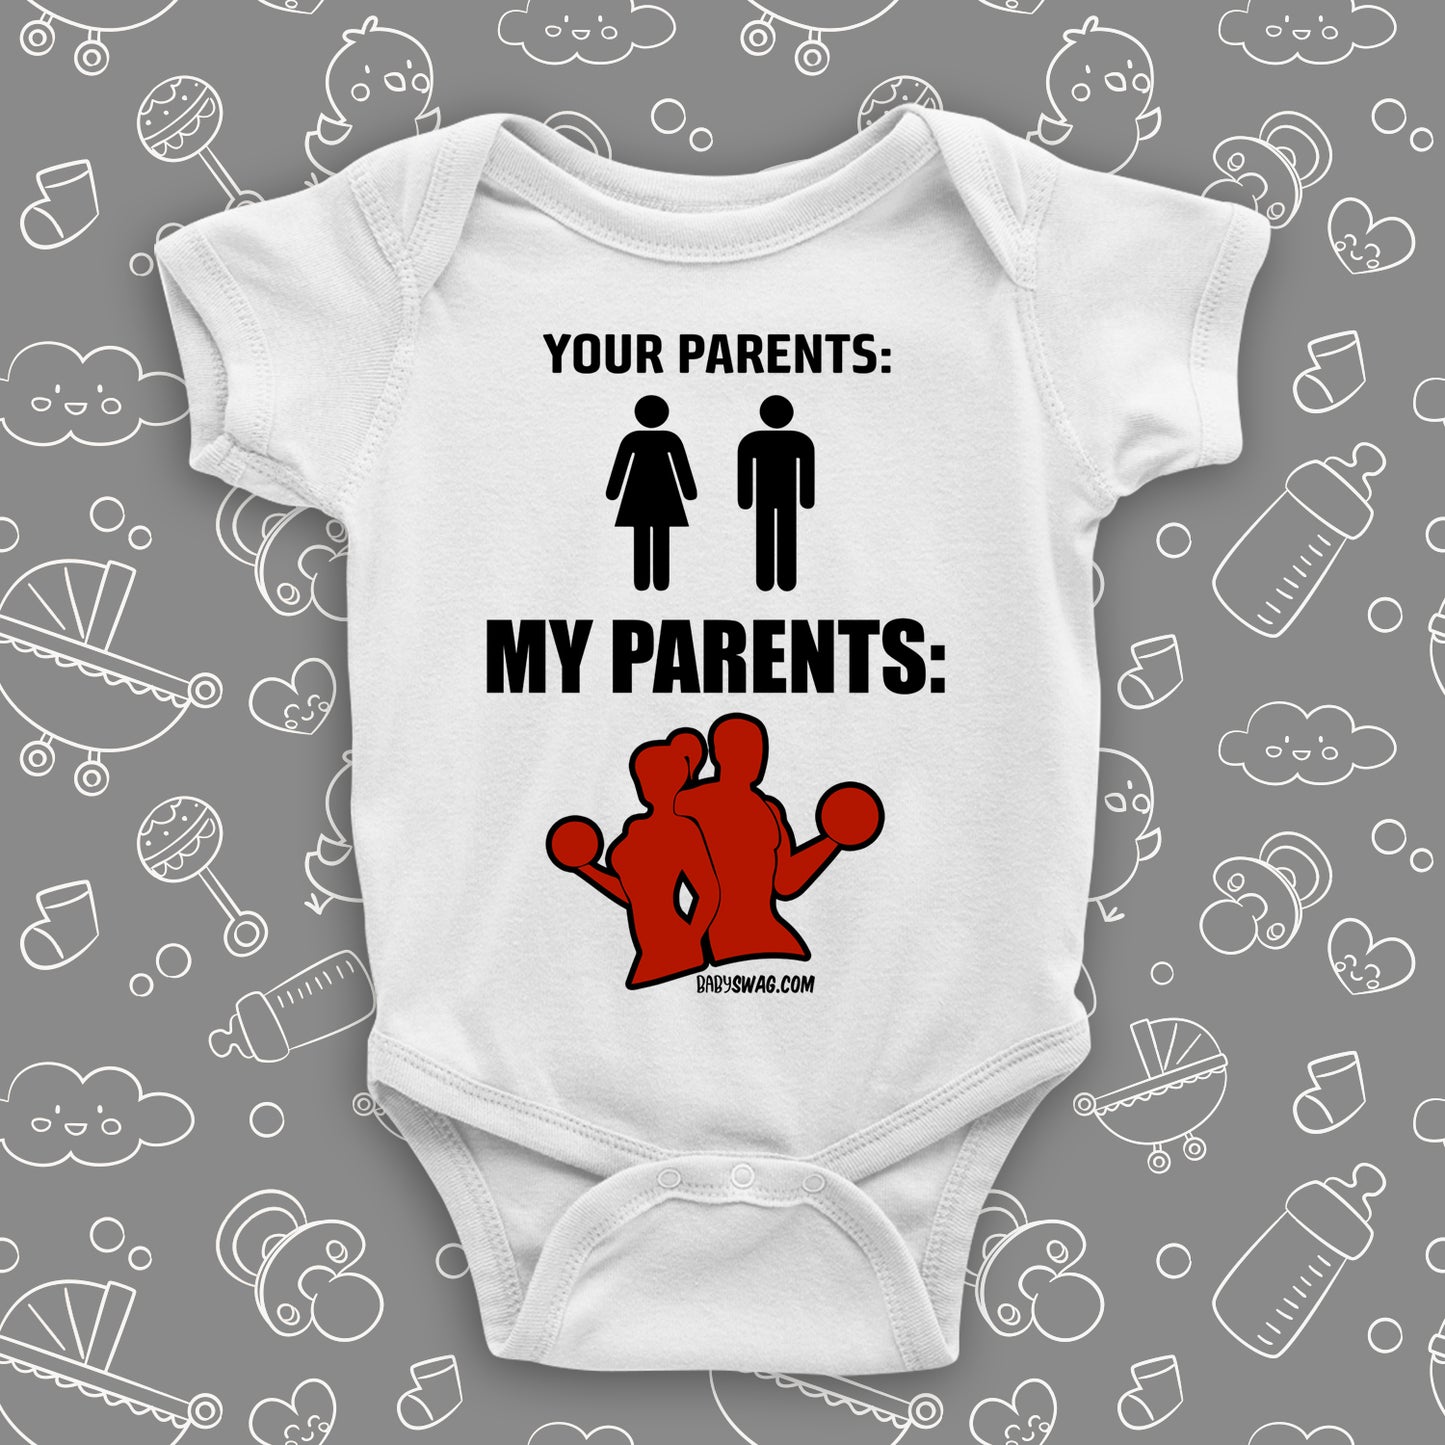 Your Parents, My Parents